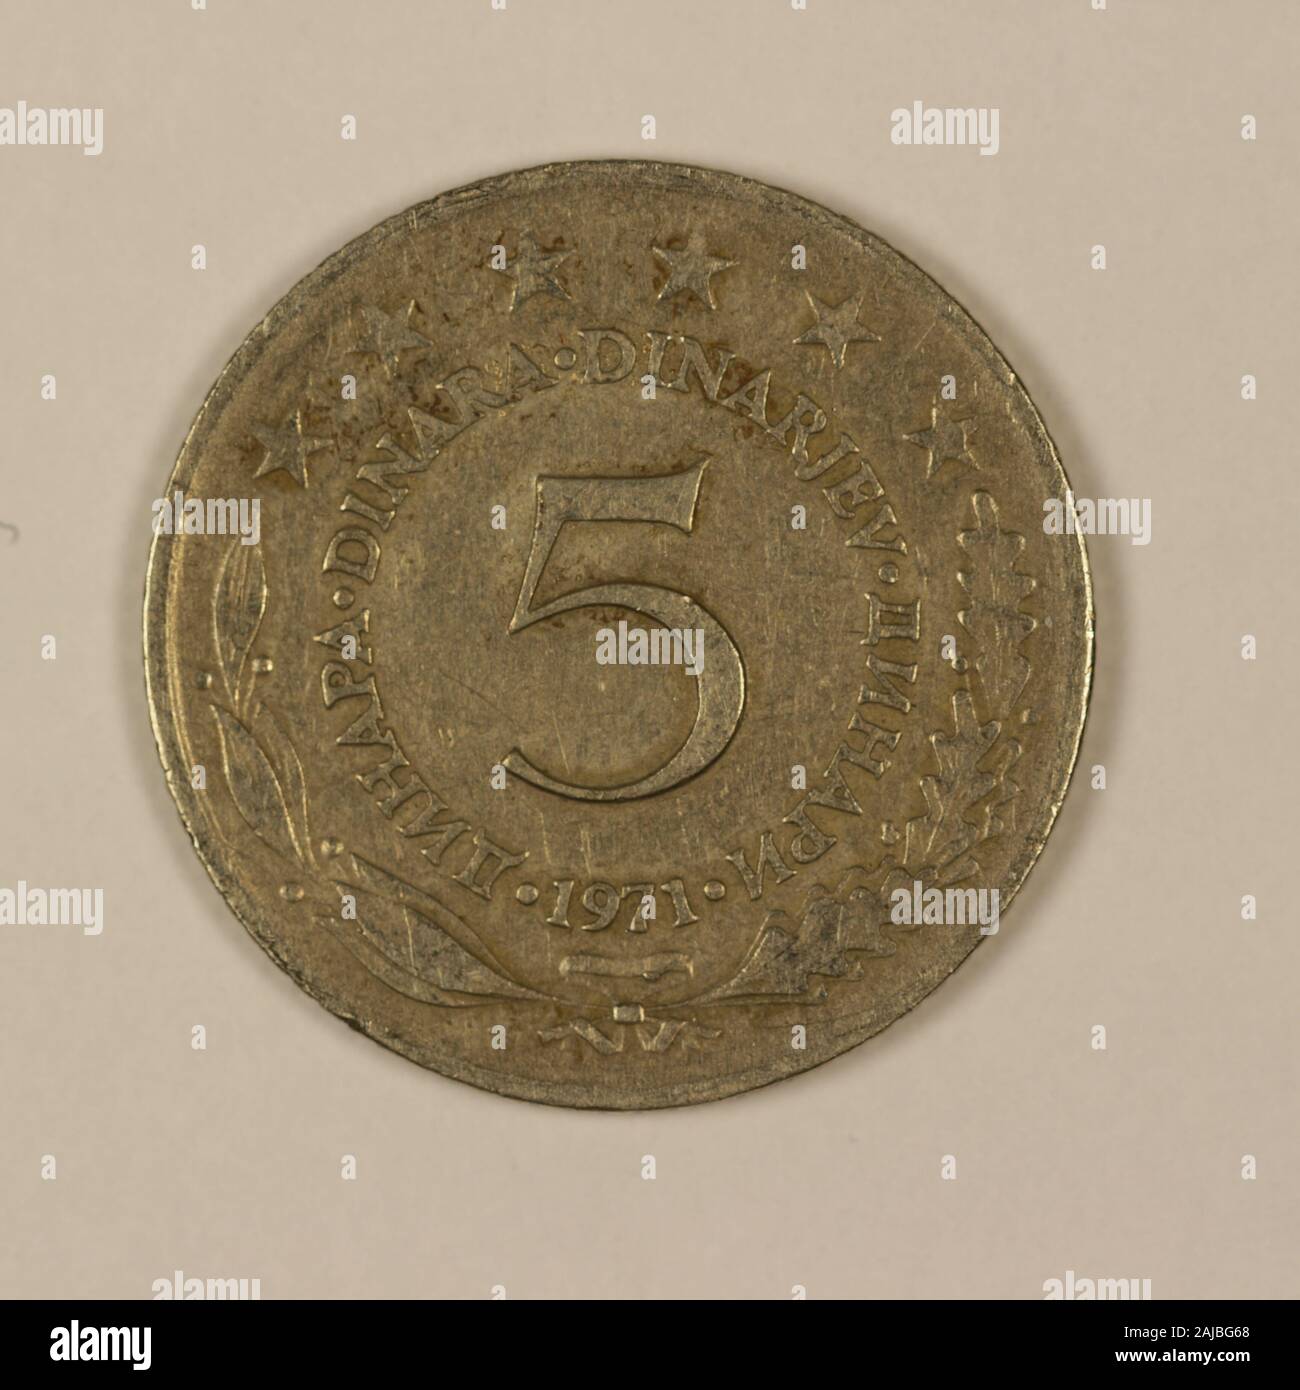 Vorderseite einer ehemaligen Jugoslawischen 5 dinari Münze Foto Stock